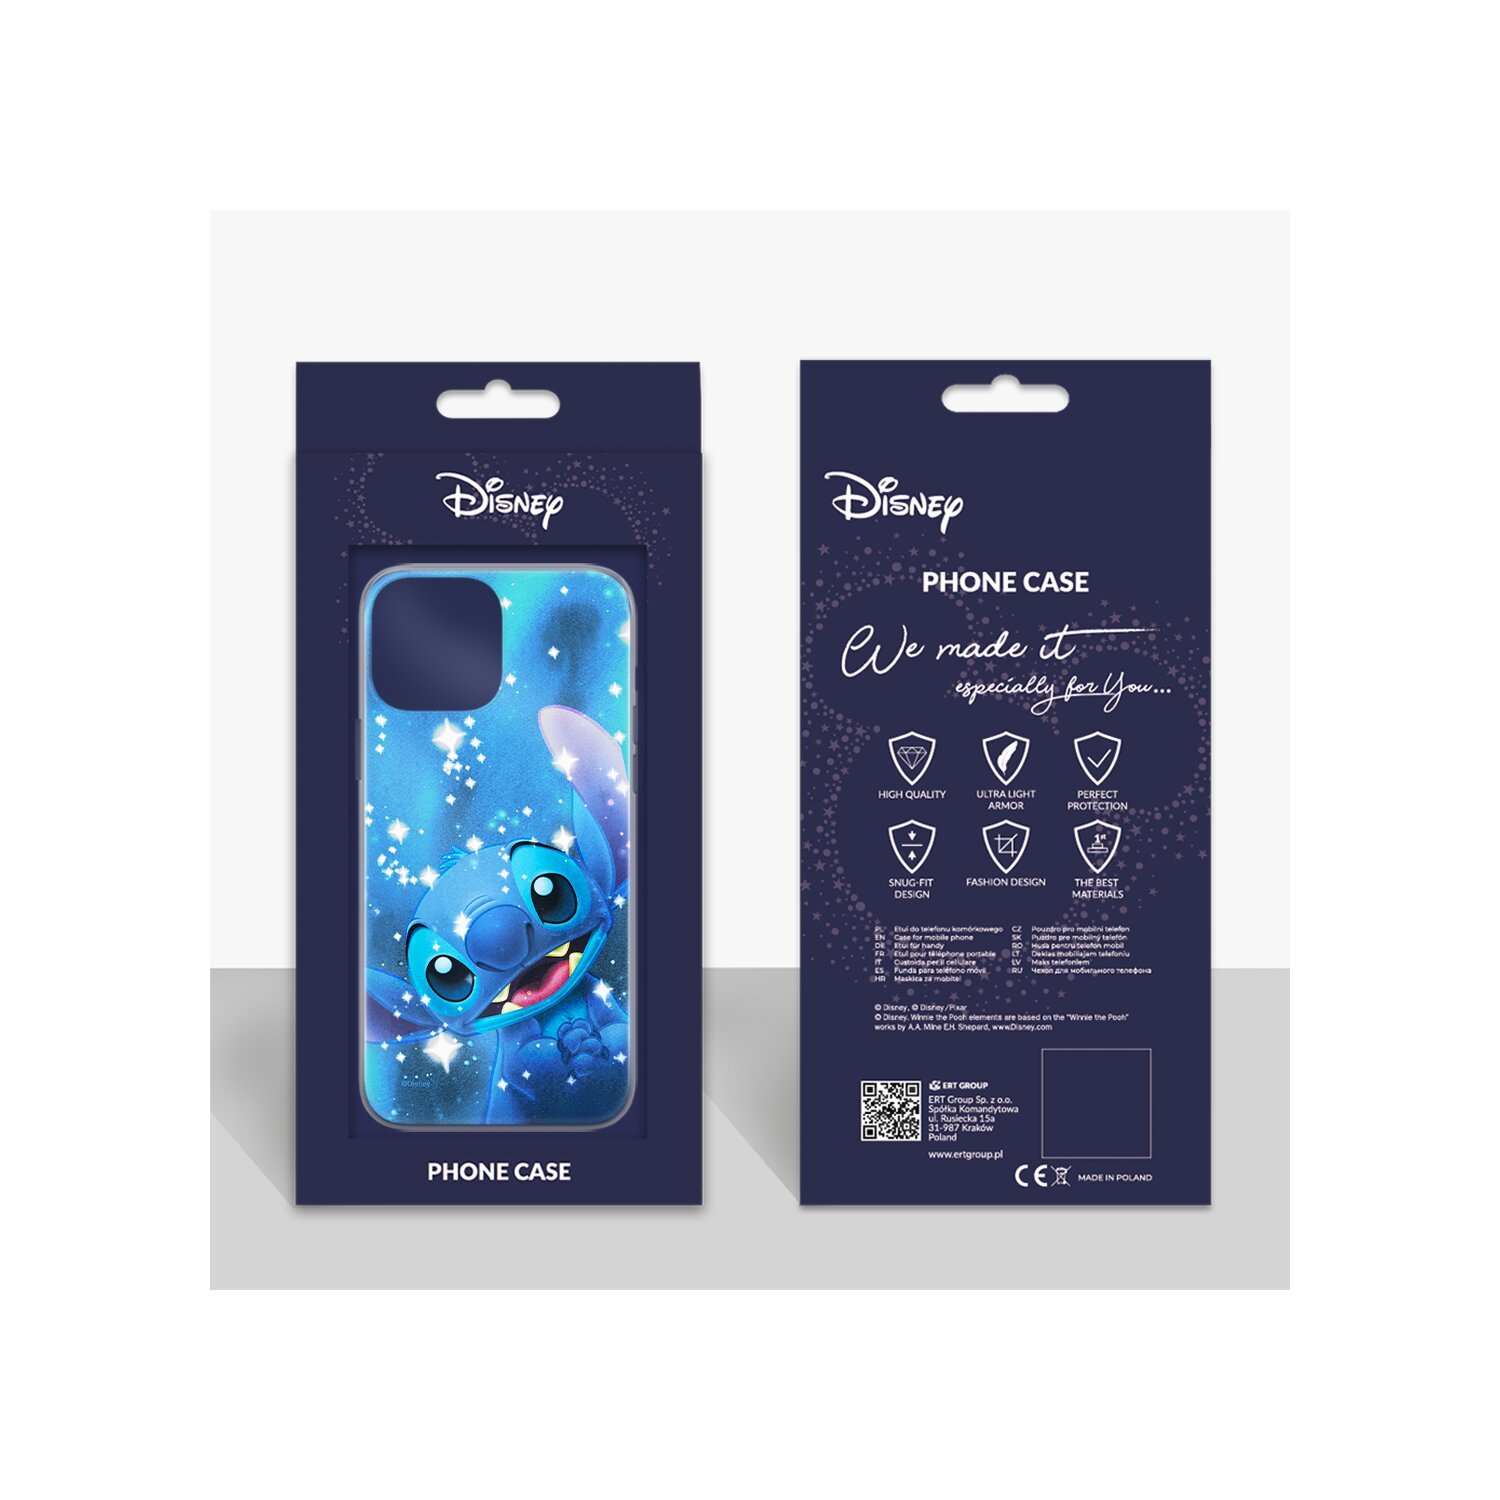 DISNEY Stitch A13 Galaxy Backcover, Blau Full 002 Samsung, 4G, Print